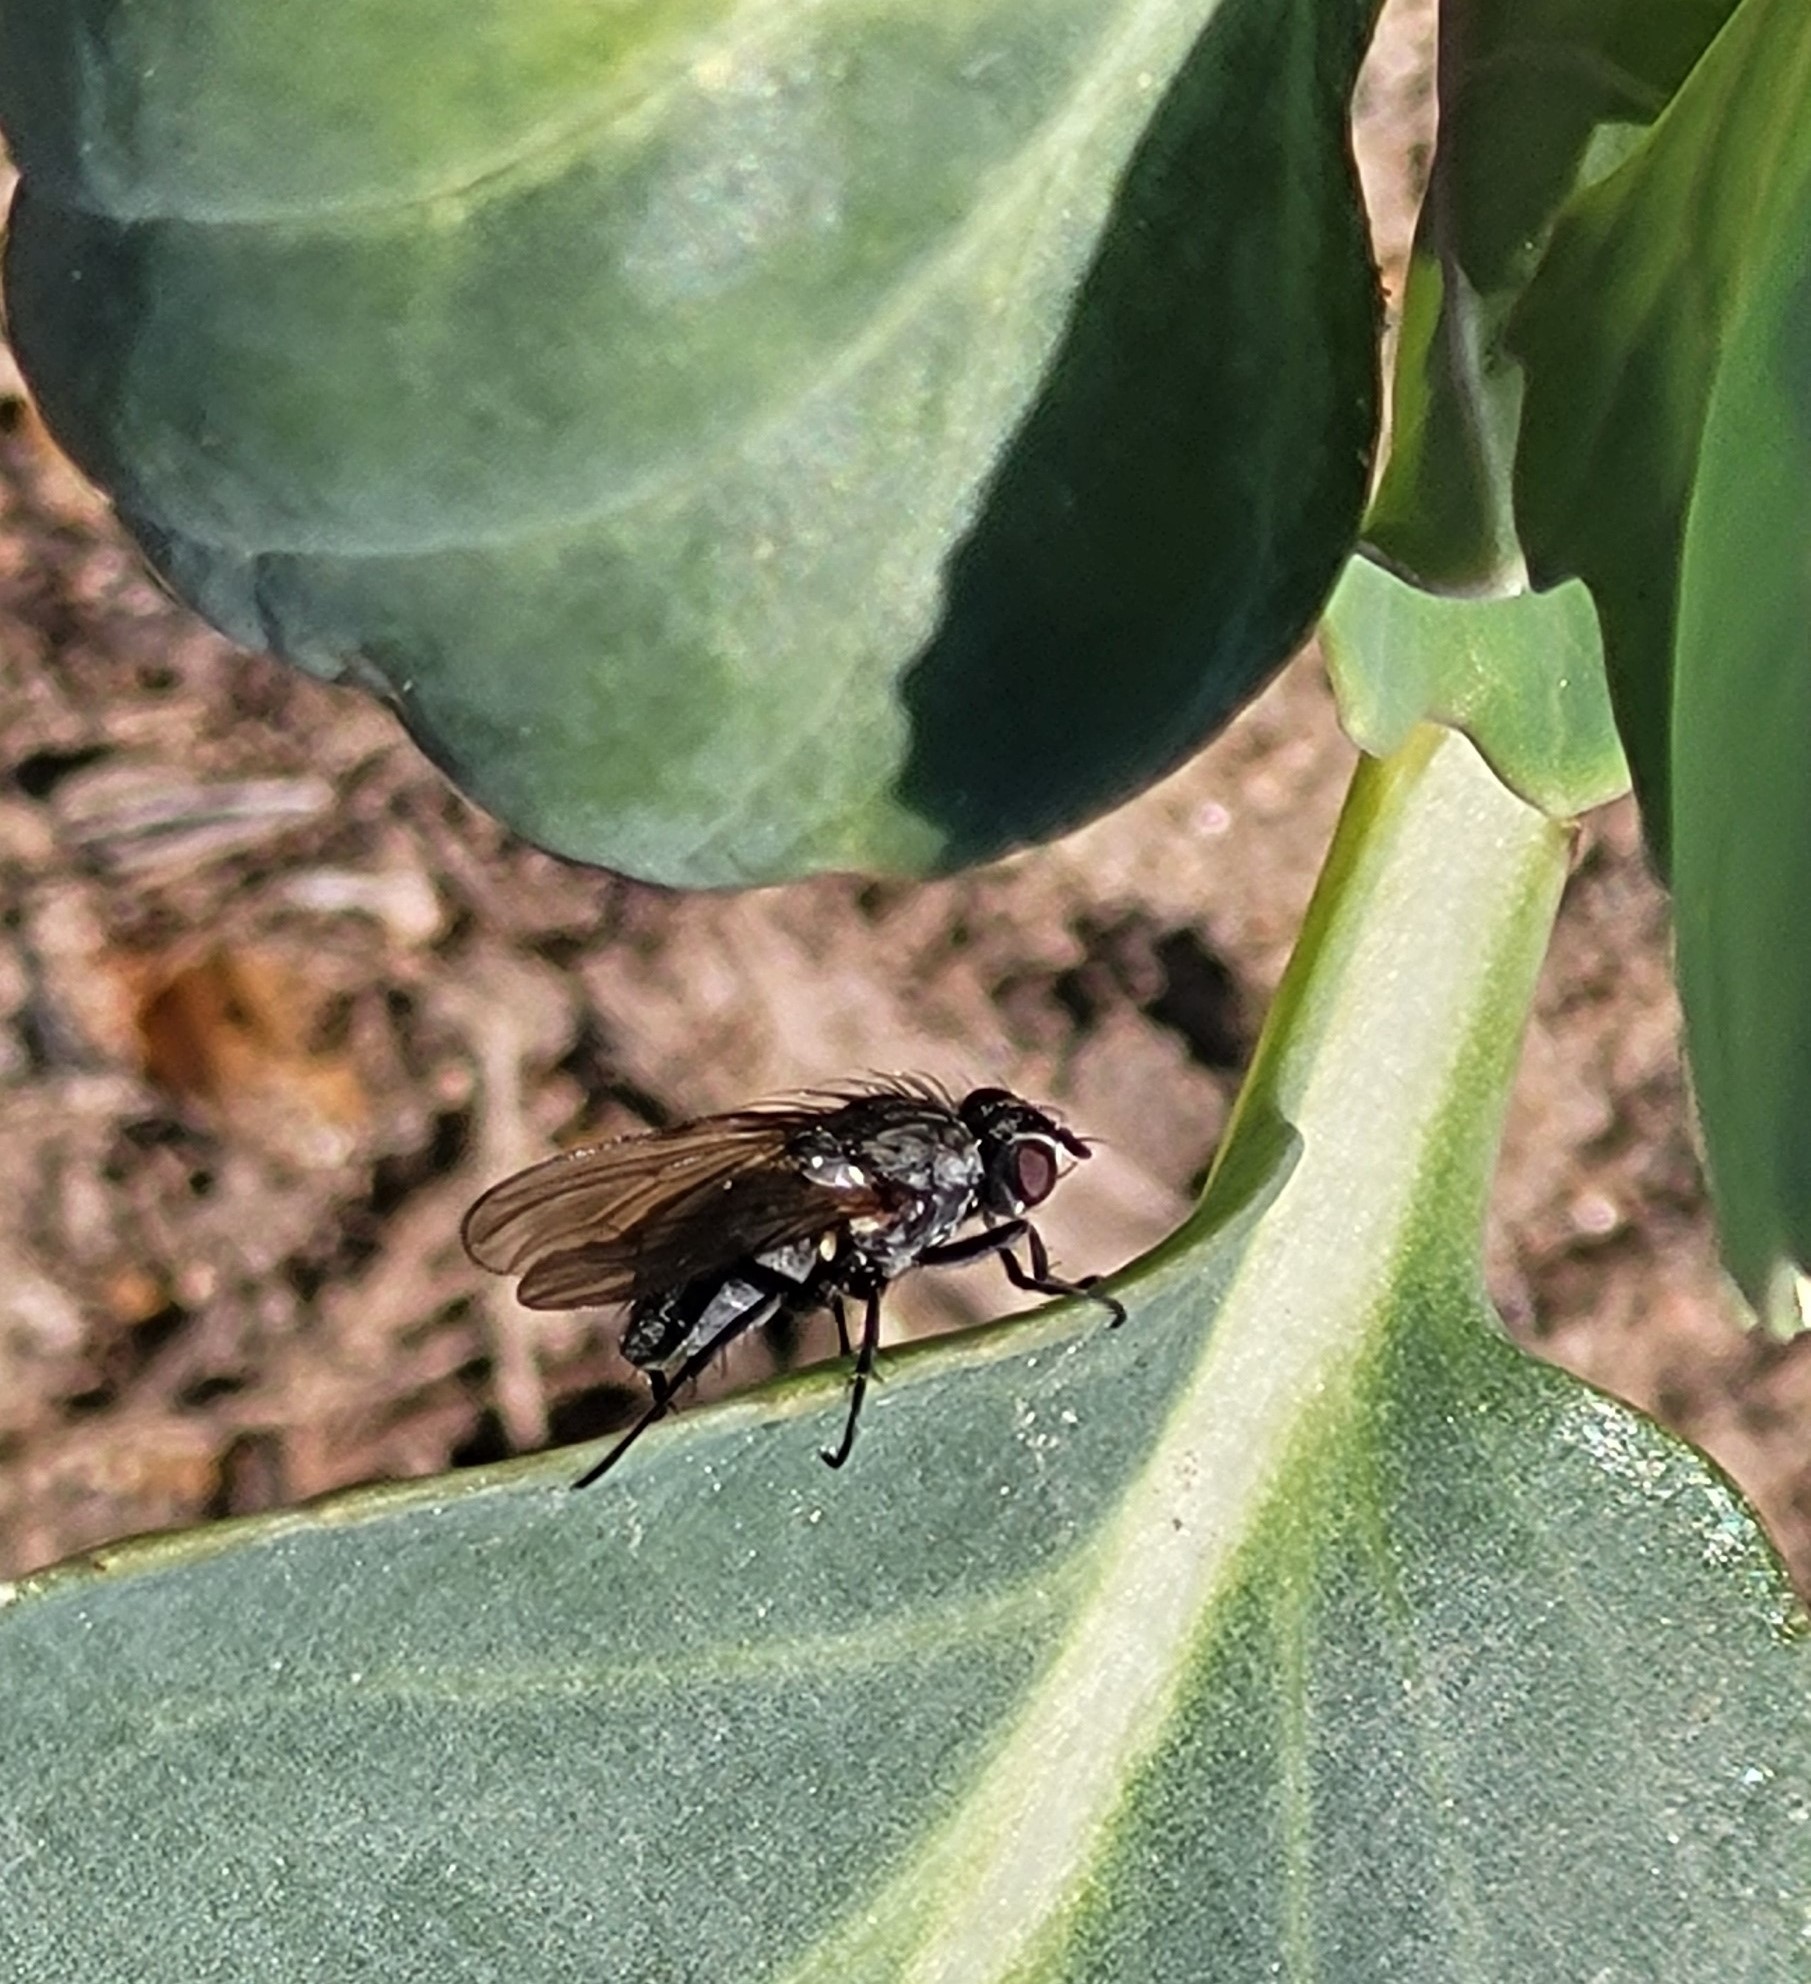 Cabbage maggot adult fly on leaf.